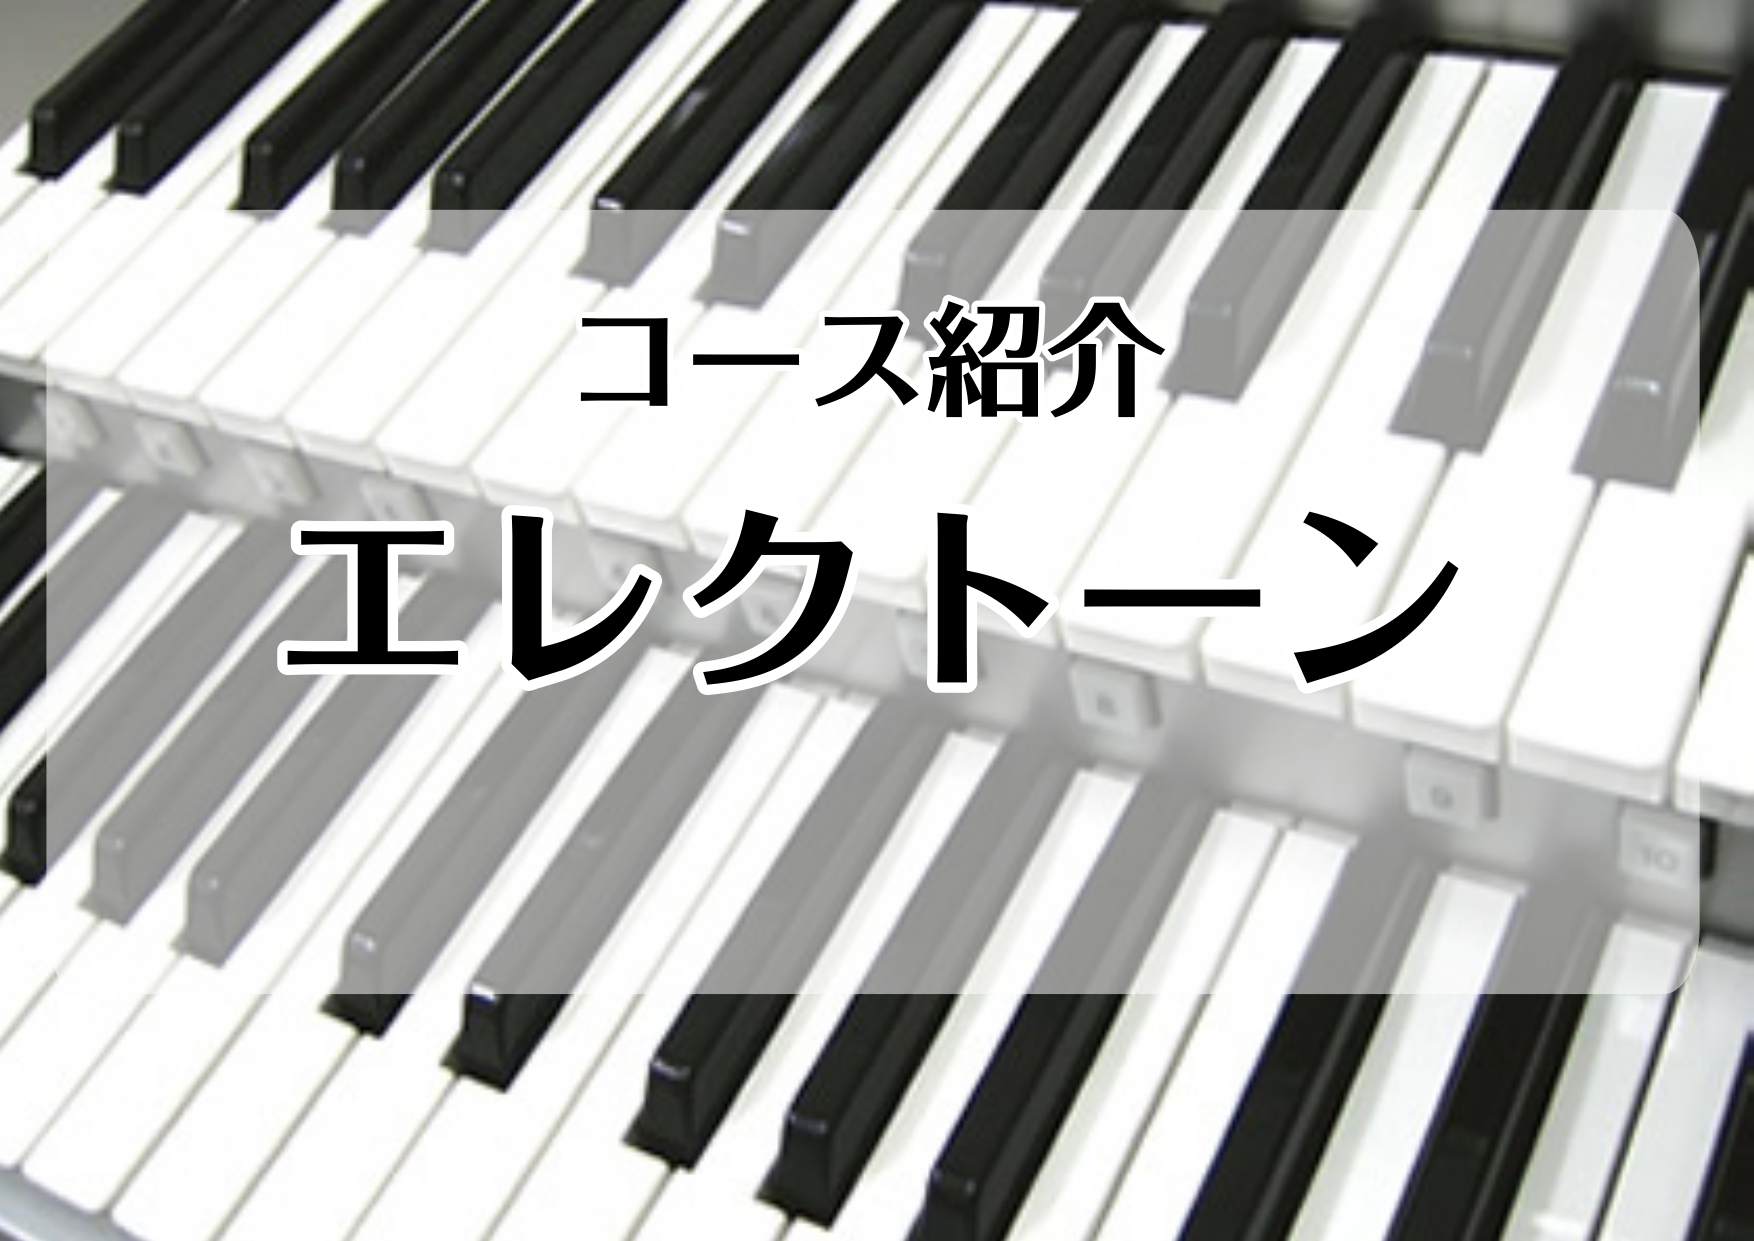 *[http://www.shimamura.co.jp/lesson/course/electronicorgan/:title=エレクトーンコース] さまざまな楽器の音色やリズムを、自分自身で創り上げることができる電子オルガン。]]多彩なオルガンサウンドを活かして、バンドやジャズ・オルガン、リア […]